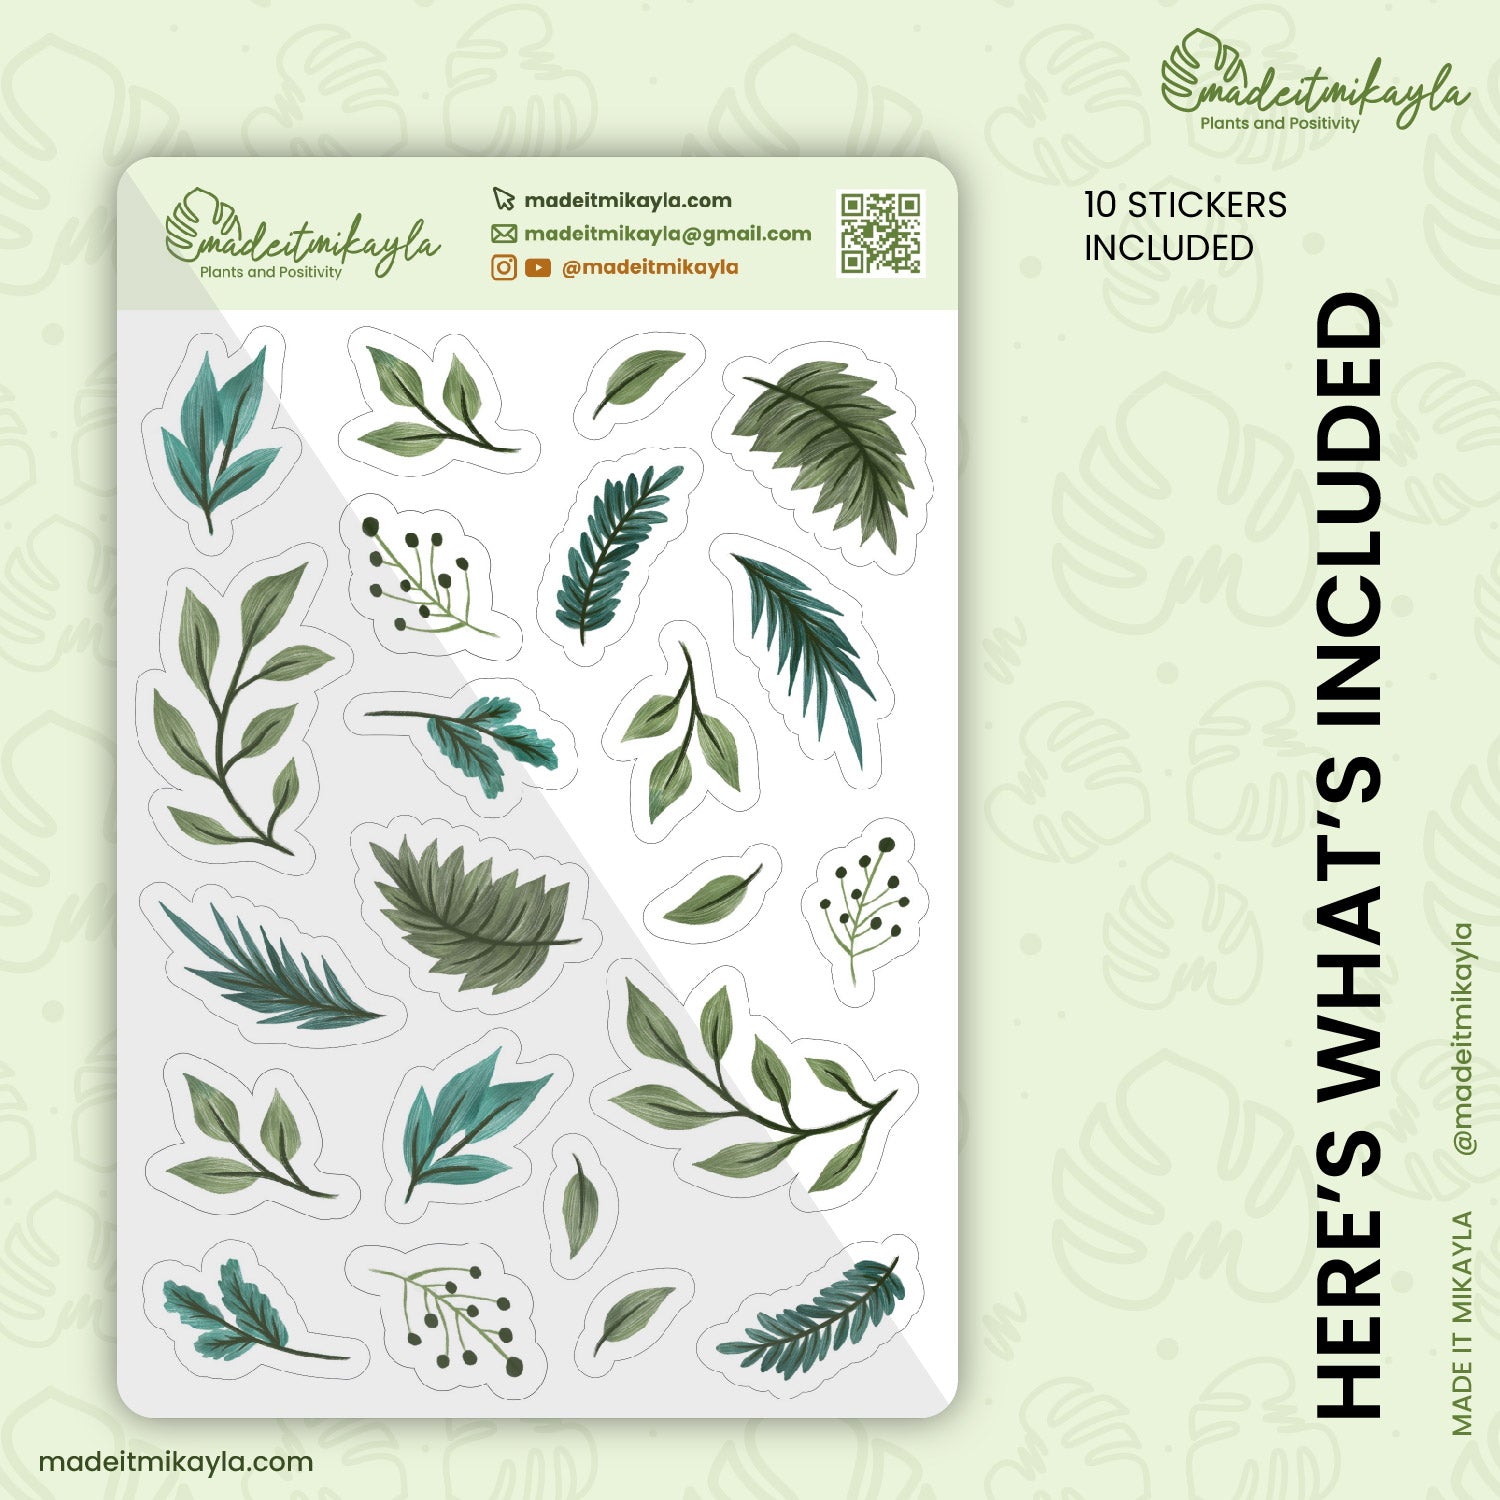 Gouache Foliage Digital Stickers | MadeItMikayla